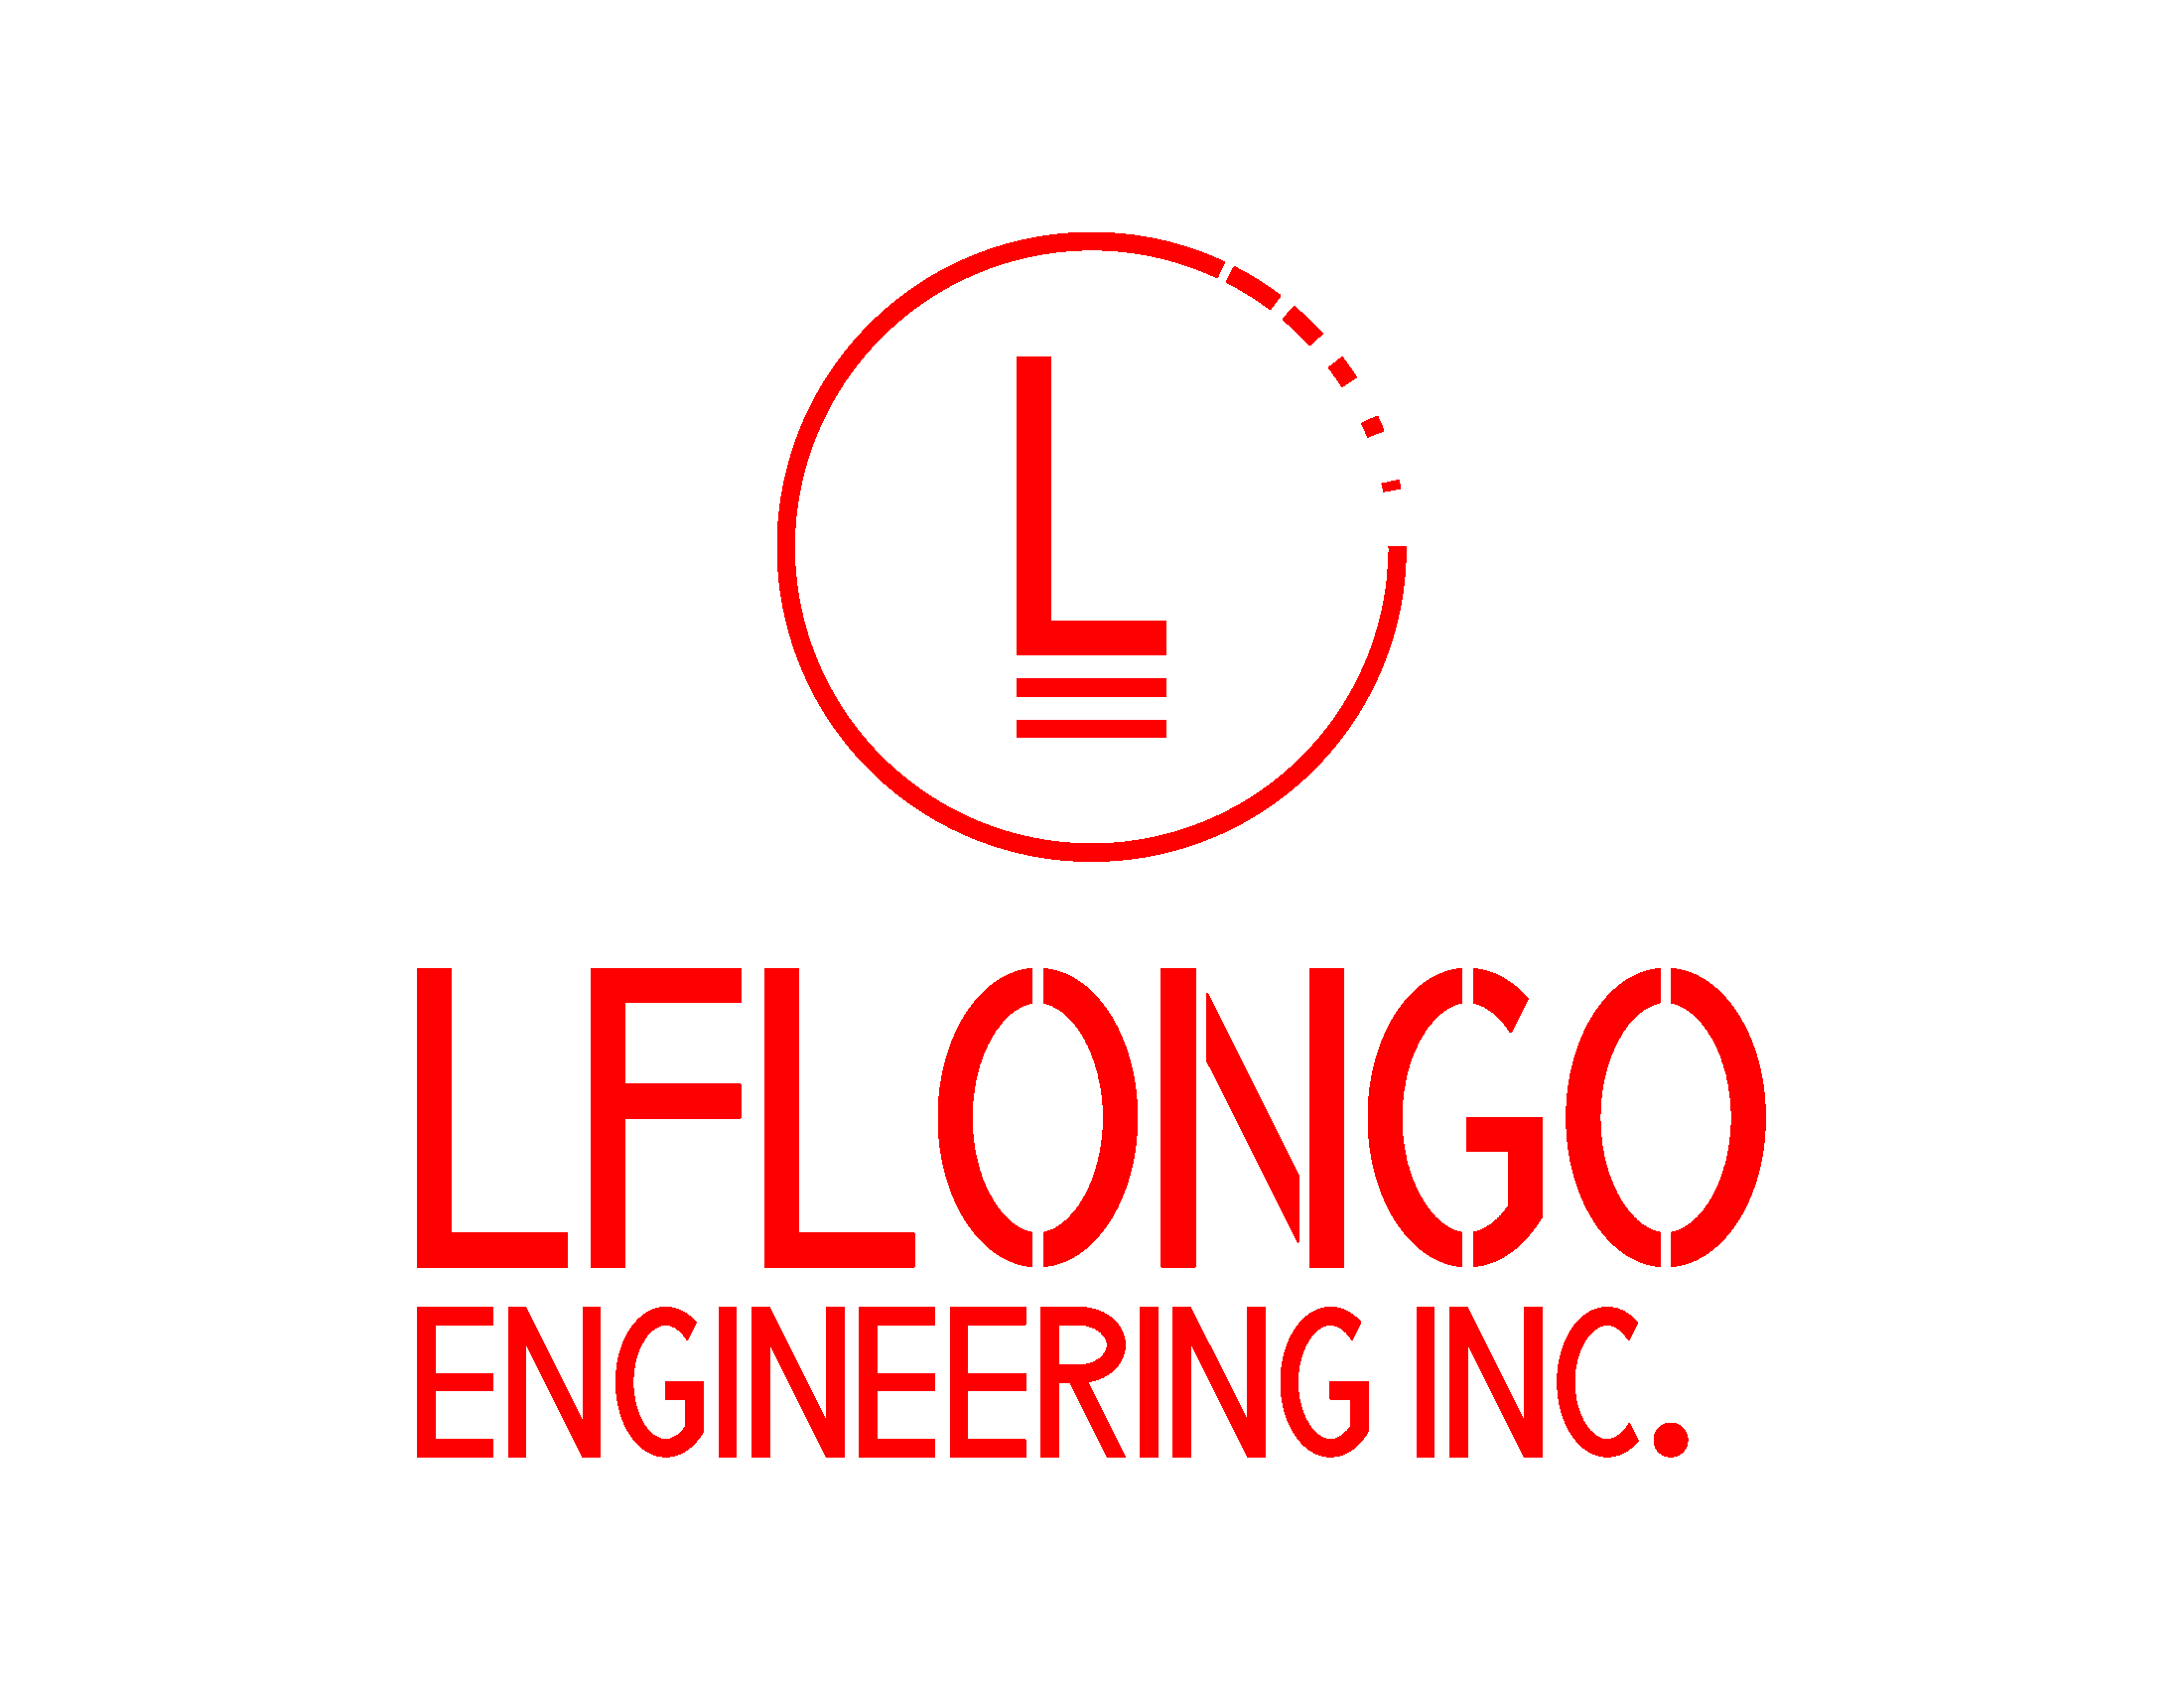 LFLongo Engineering Inc